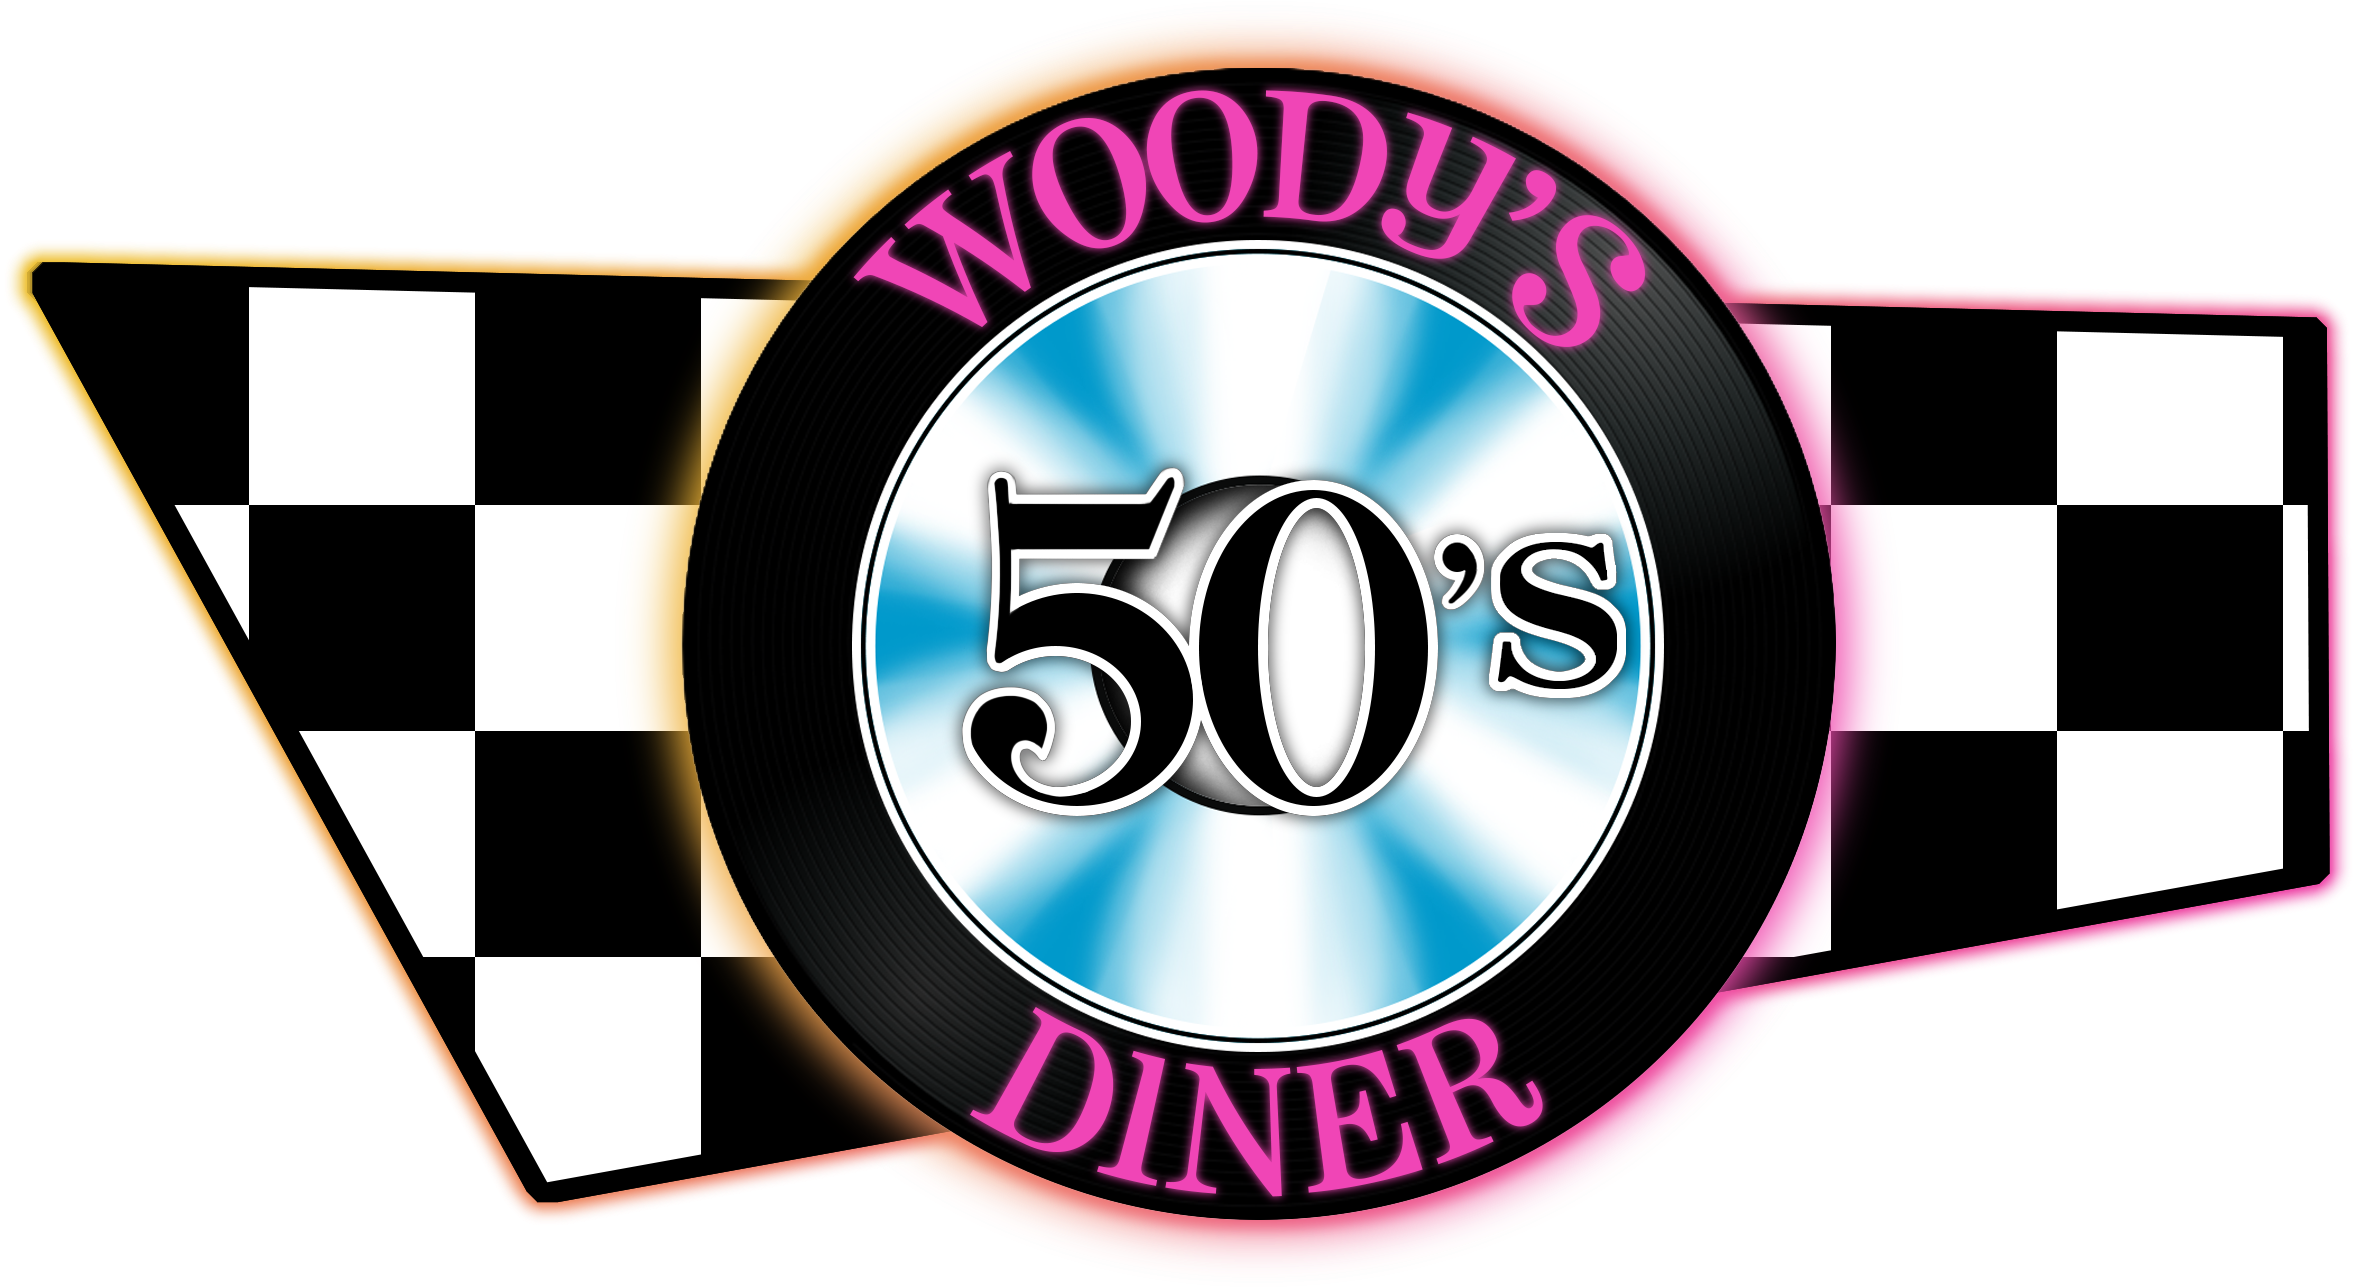 50s clipart diner menu, 50s diner menu Transparent FREE for download on